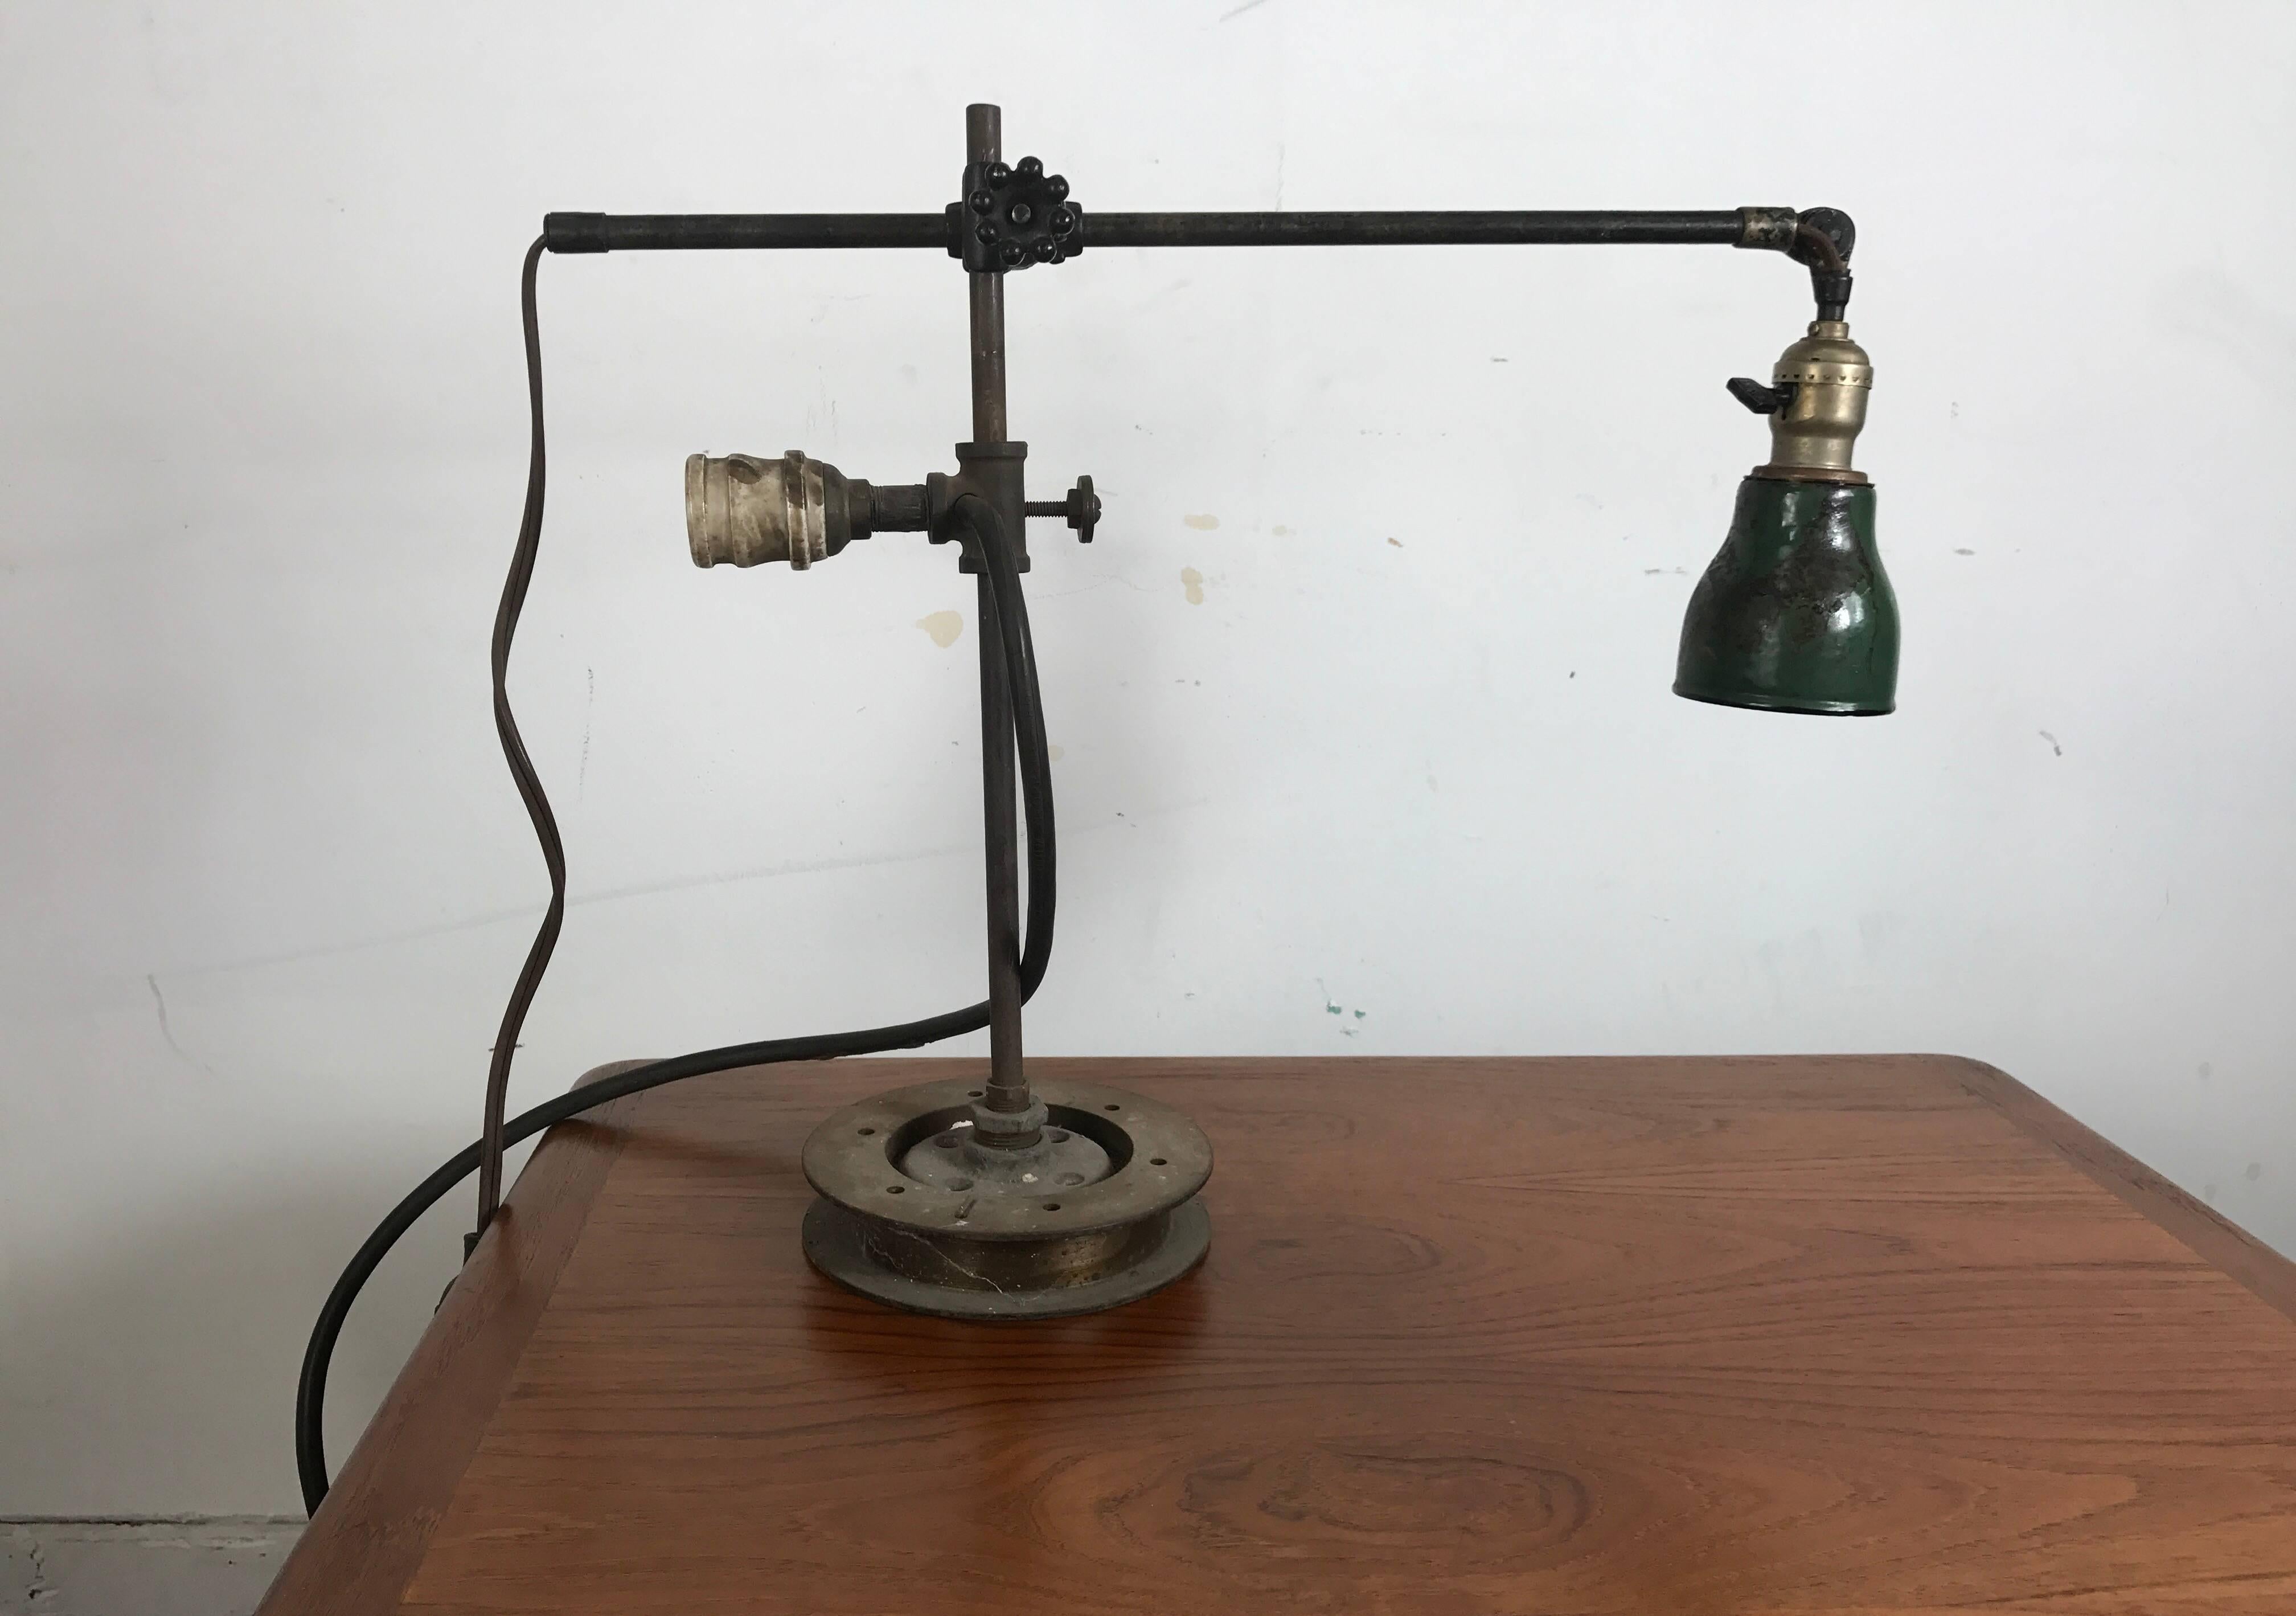 O C Weiße Industrie-Schreibtischlampe mit zusätzlicher Leuchte. Vollständig einstellbar. Behält den originalen grünen Metallschirm, der auf einem speziell bearbeiteten Sockel montiert ist.